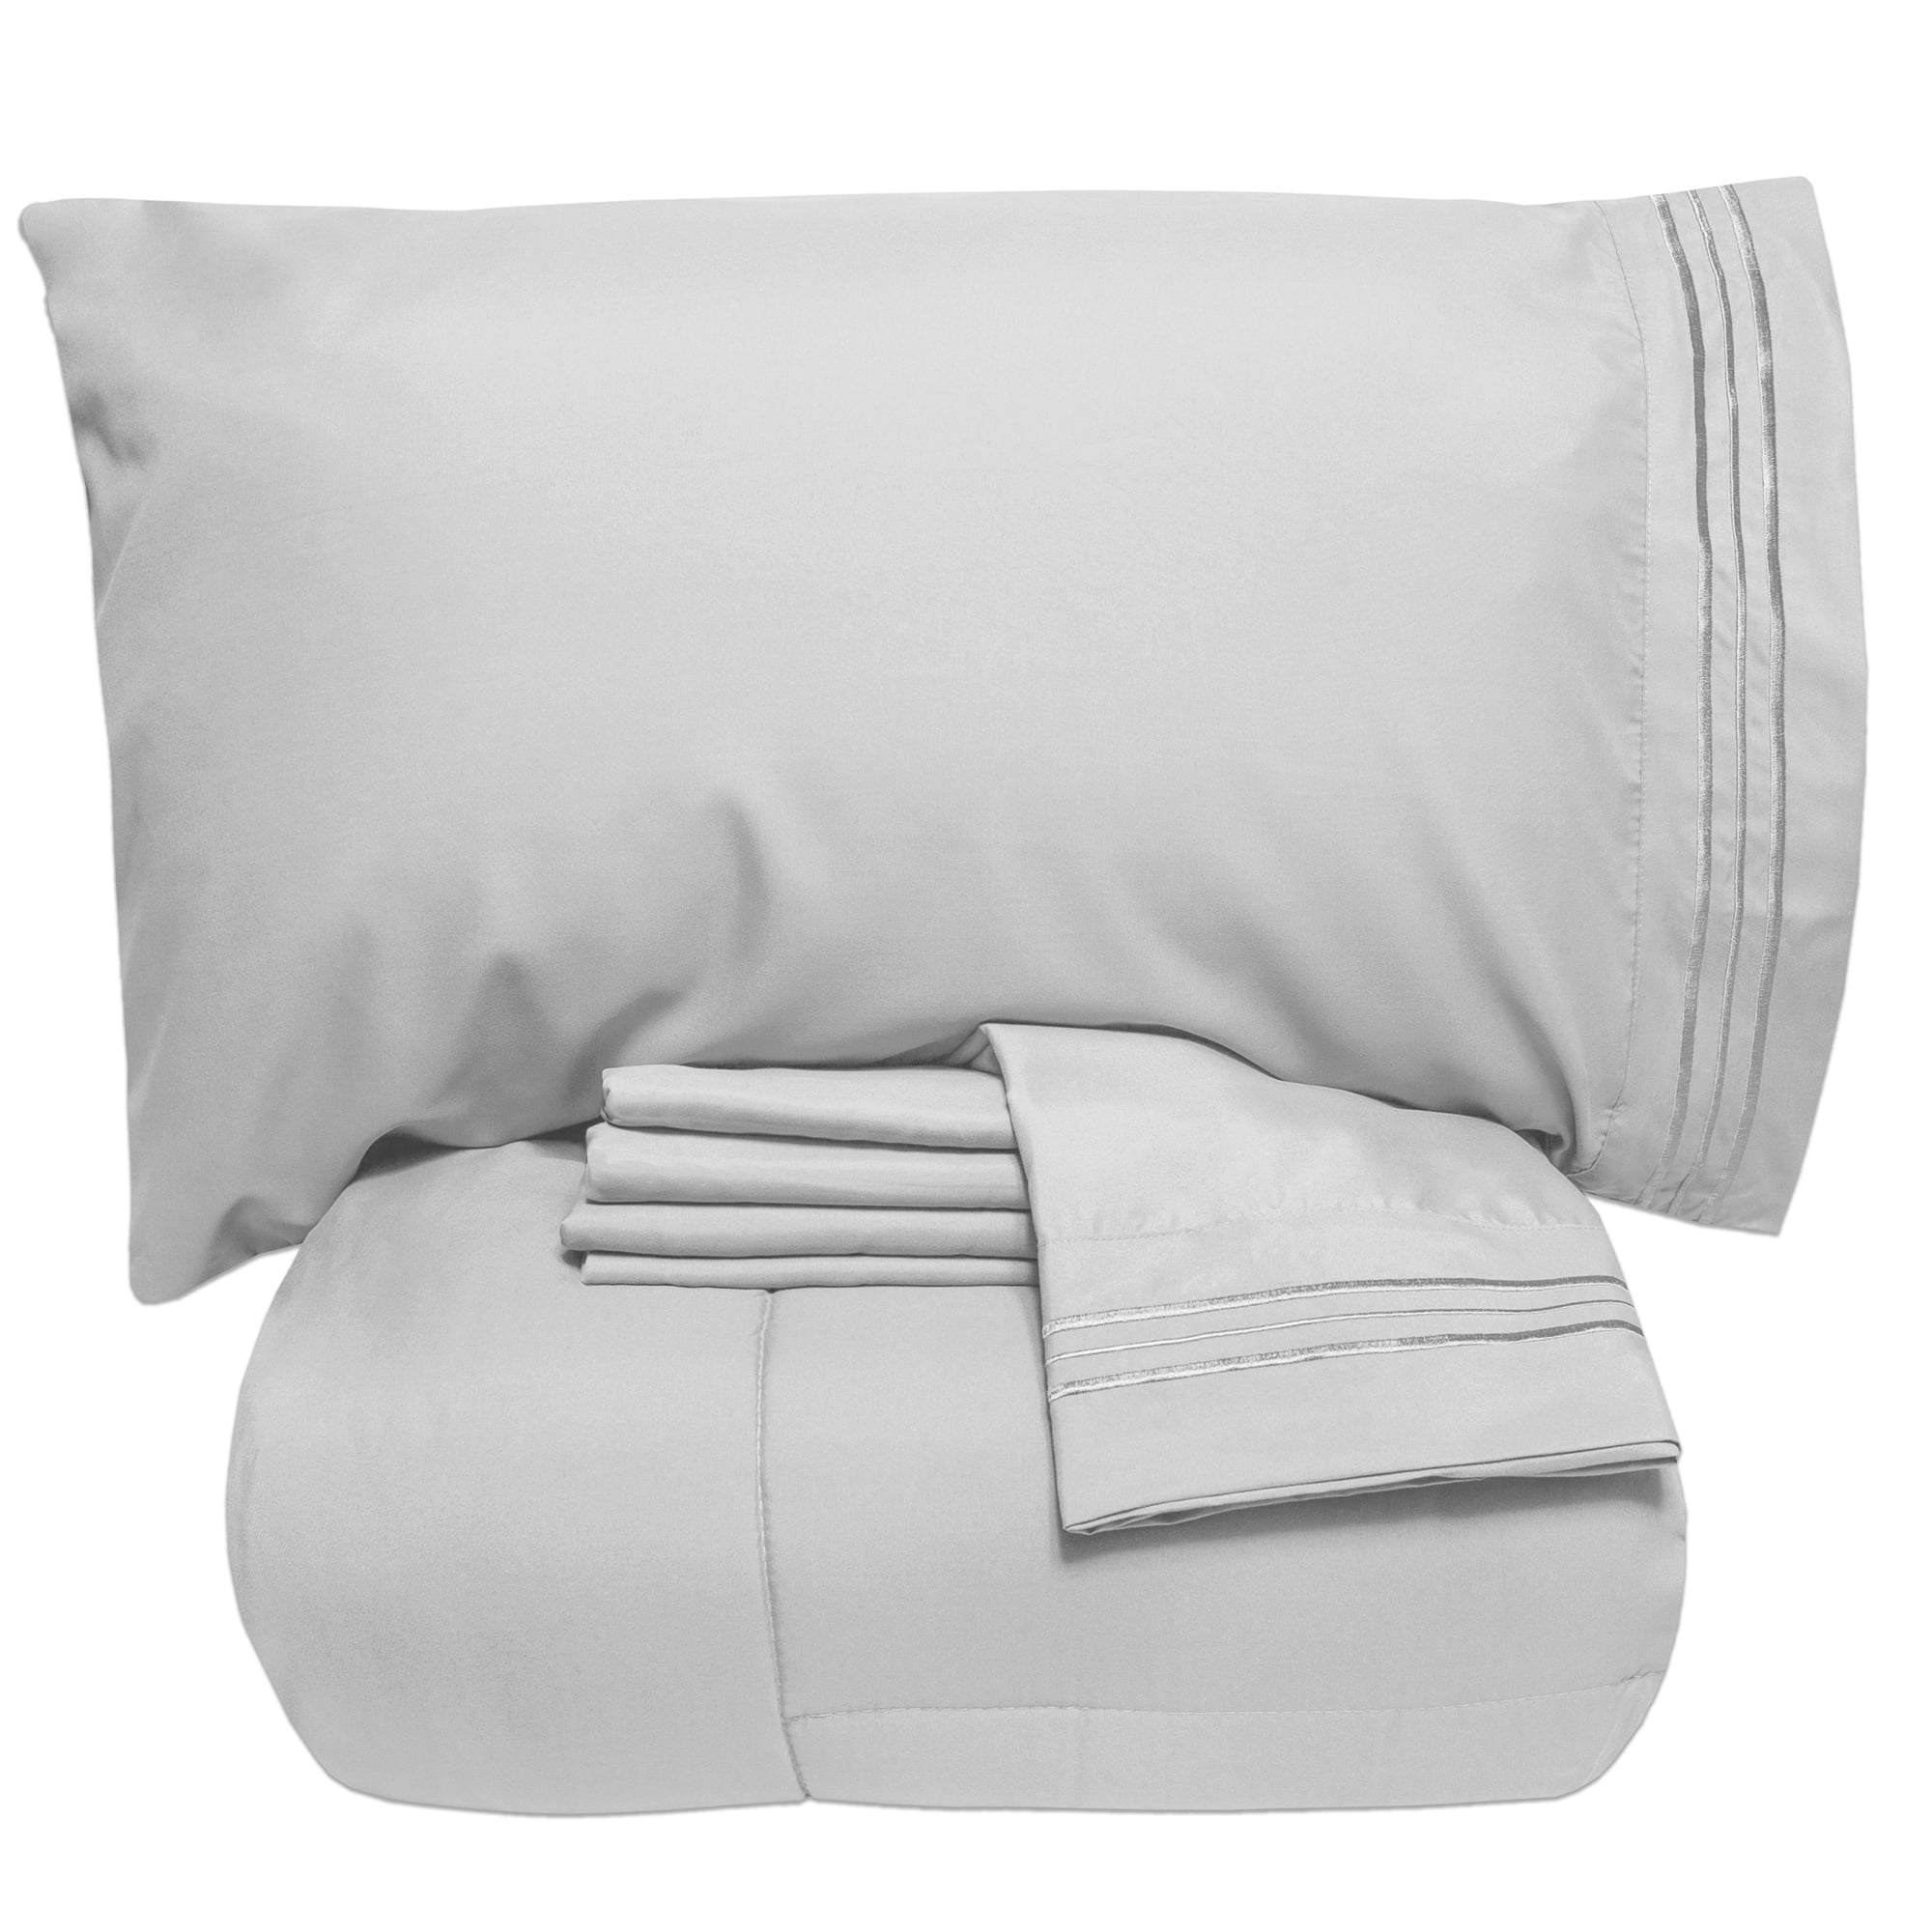 king size Elegant taste DCP 5-Piece Ultrafine Fiber Comforter Set Bed in a Bag 